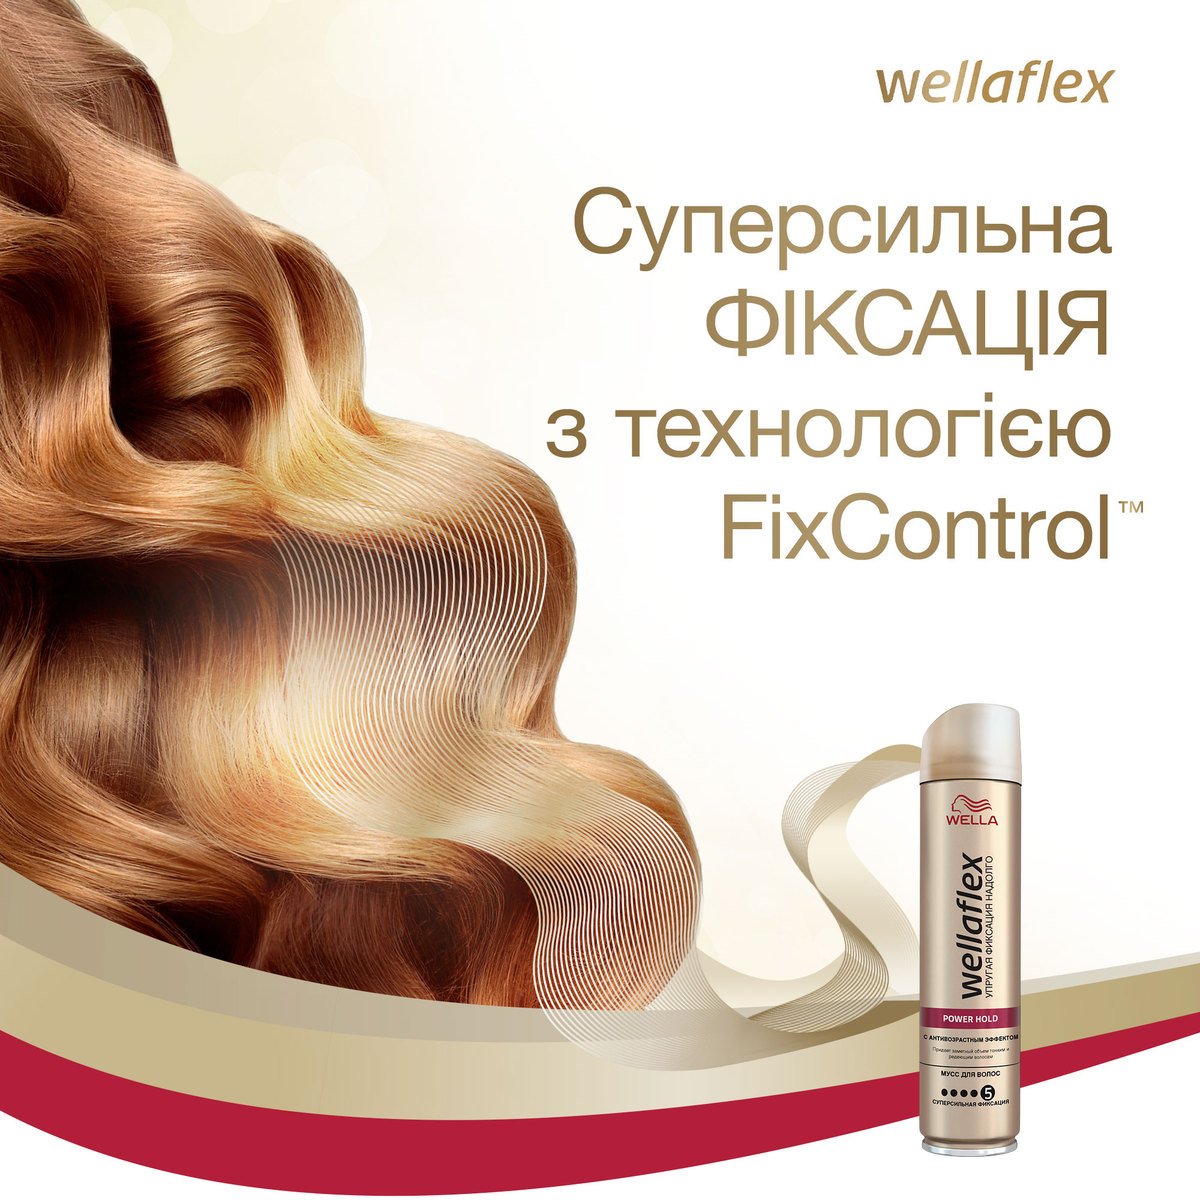 Лак для волос Wellaflex с антивозрастным эффектом Суперсильной фиксации, 250 мл - фото 6